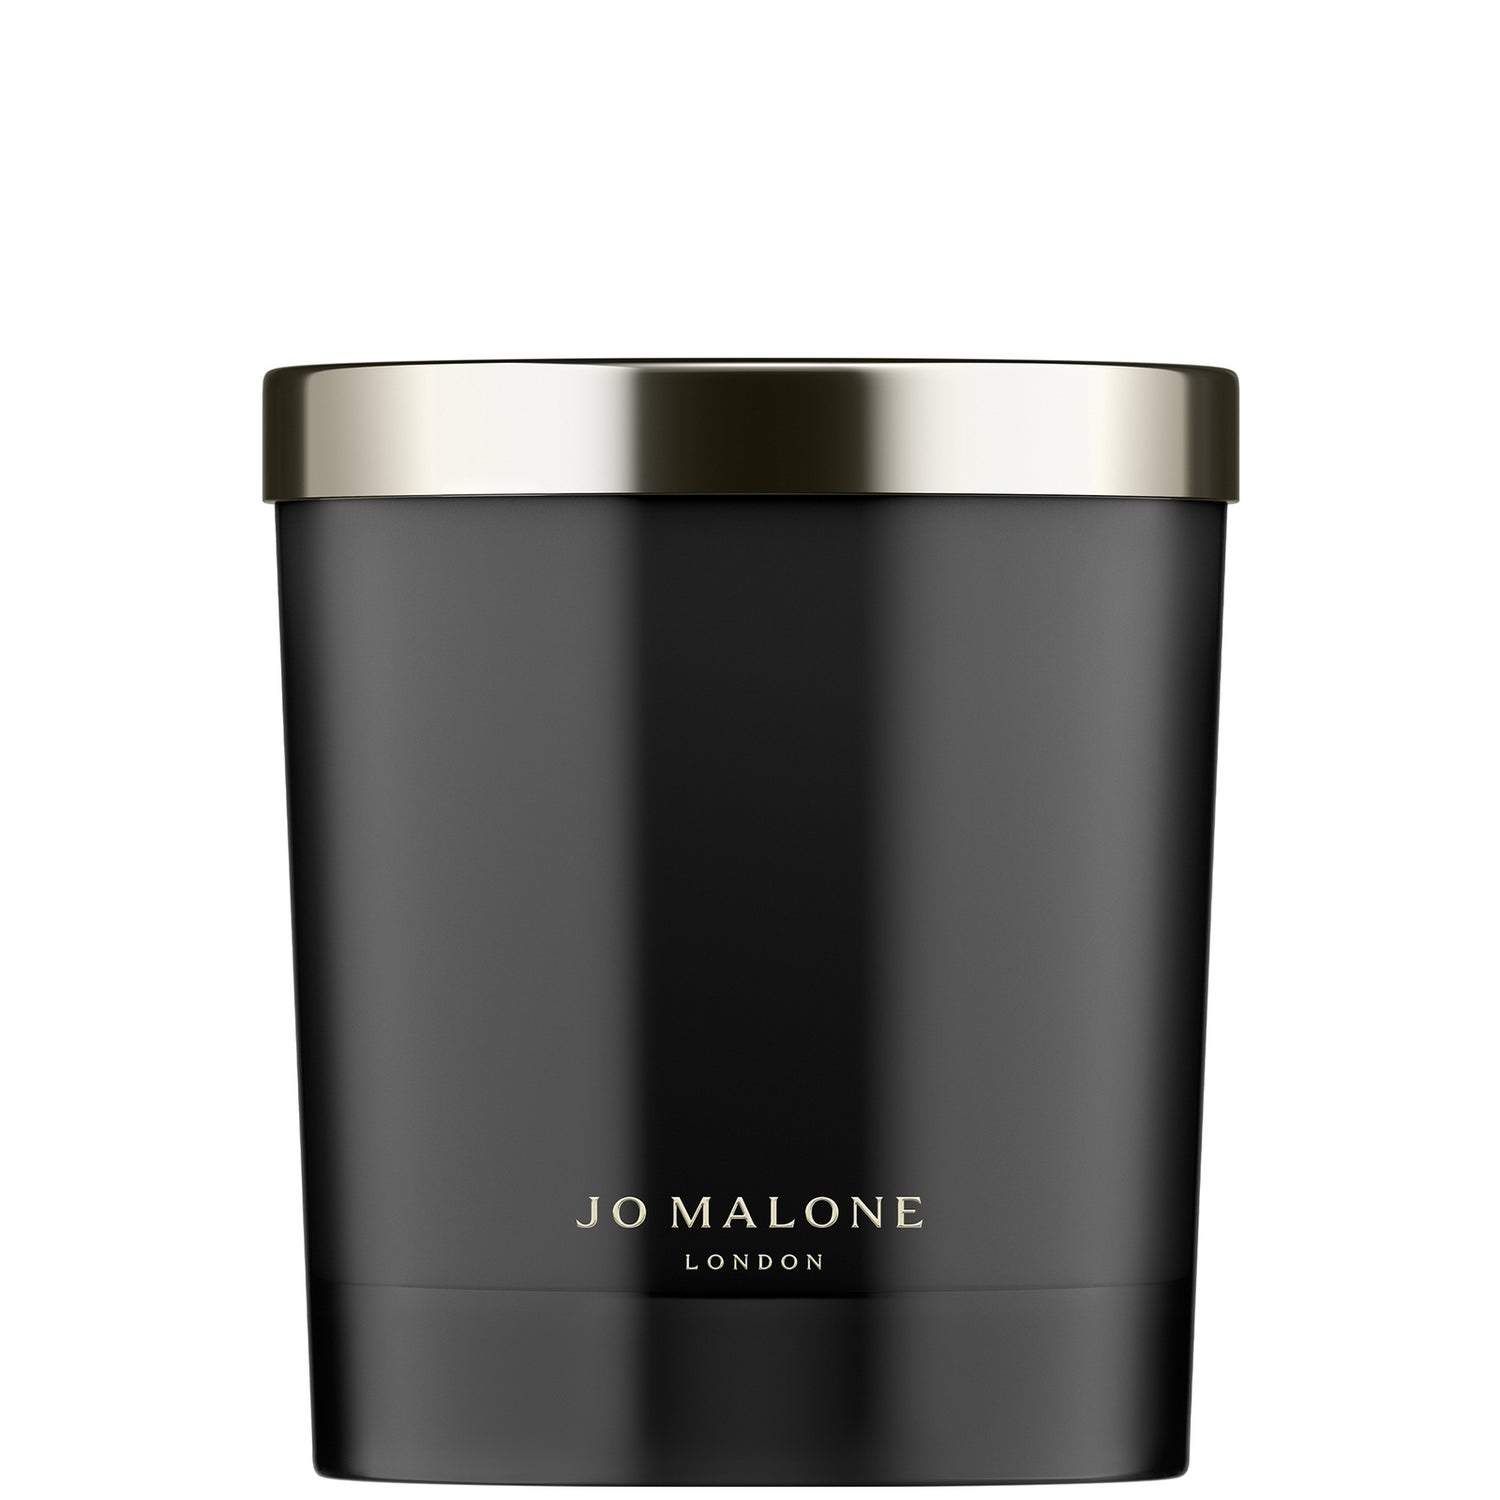 Jo Malone London Myrrh & Tonka Home Candle 200g